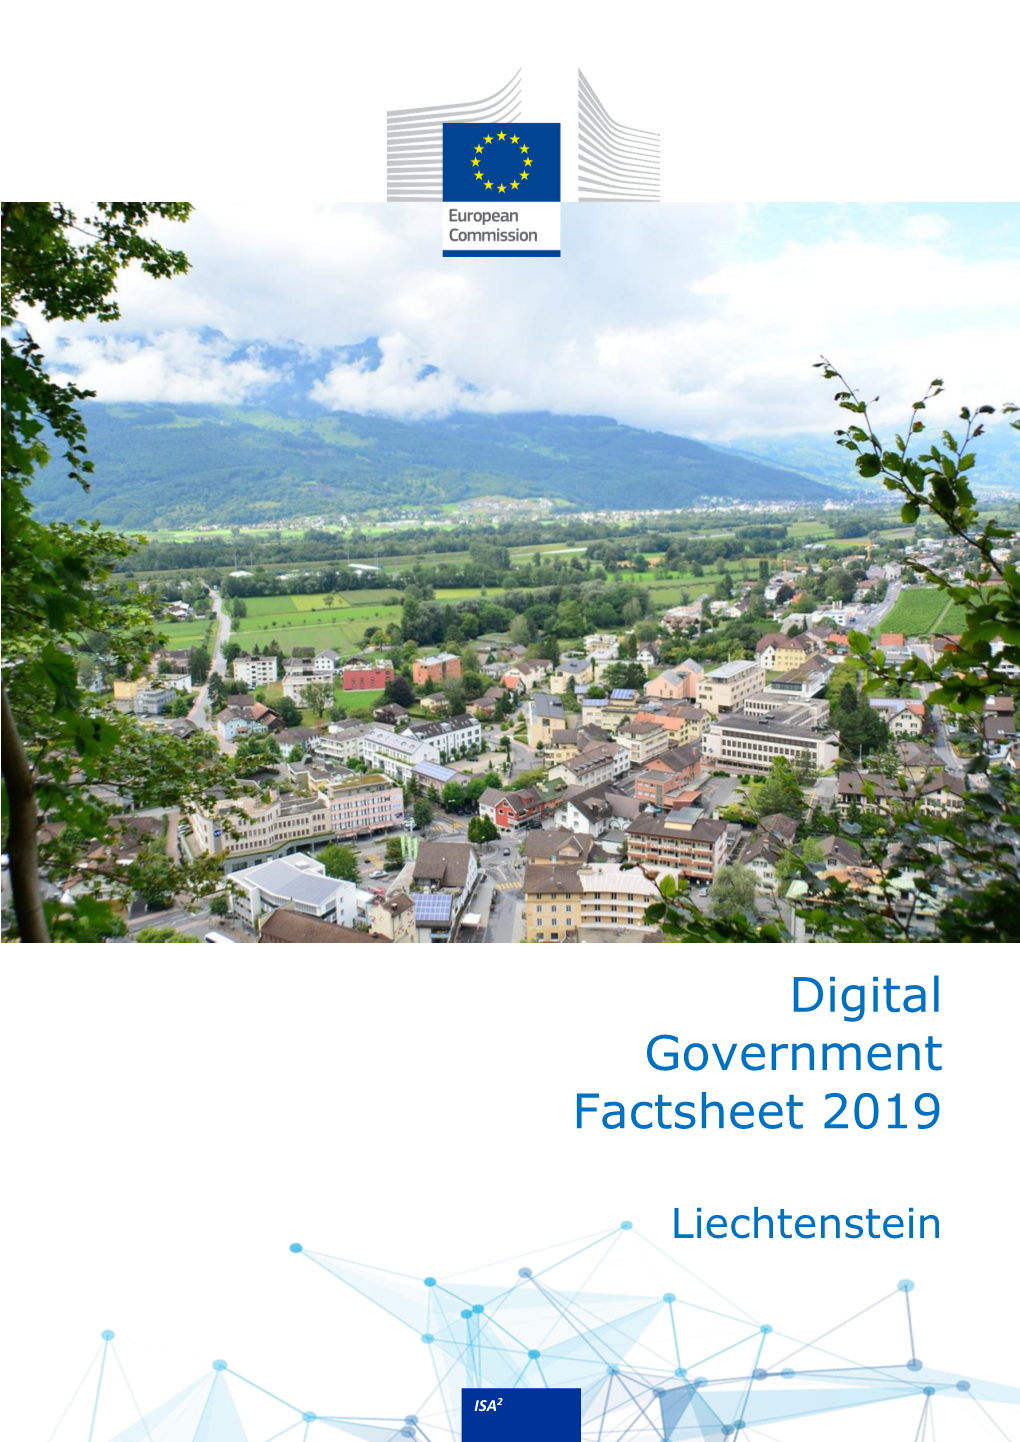 Digital Government Factsheet Liechtenstein